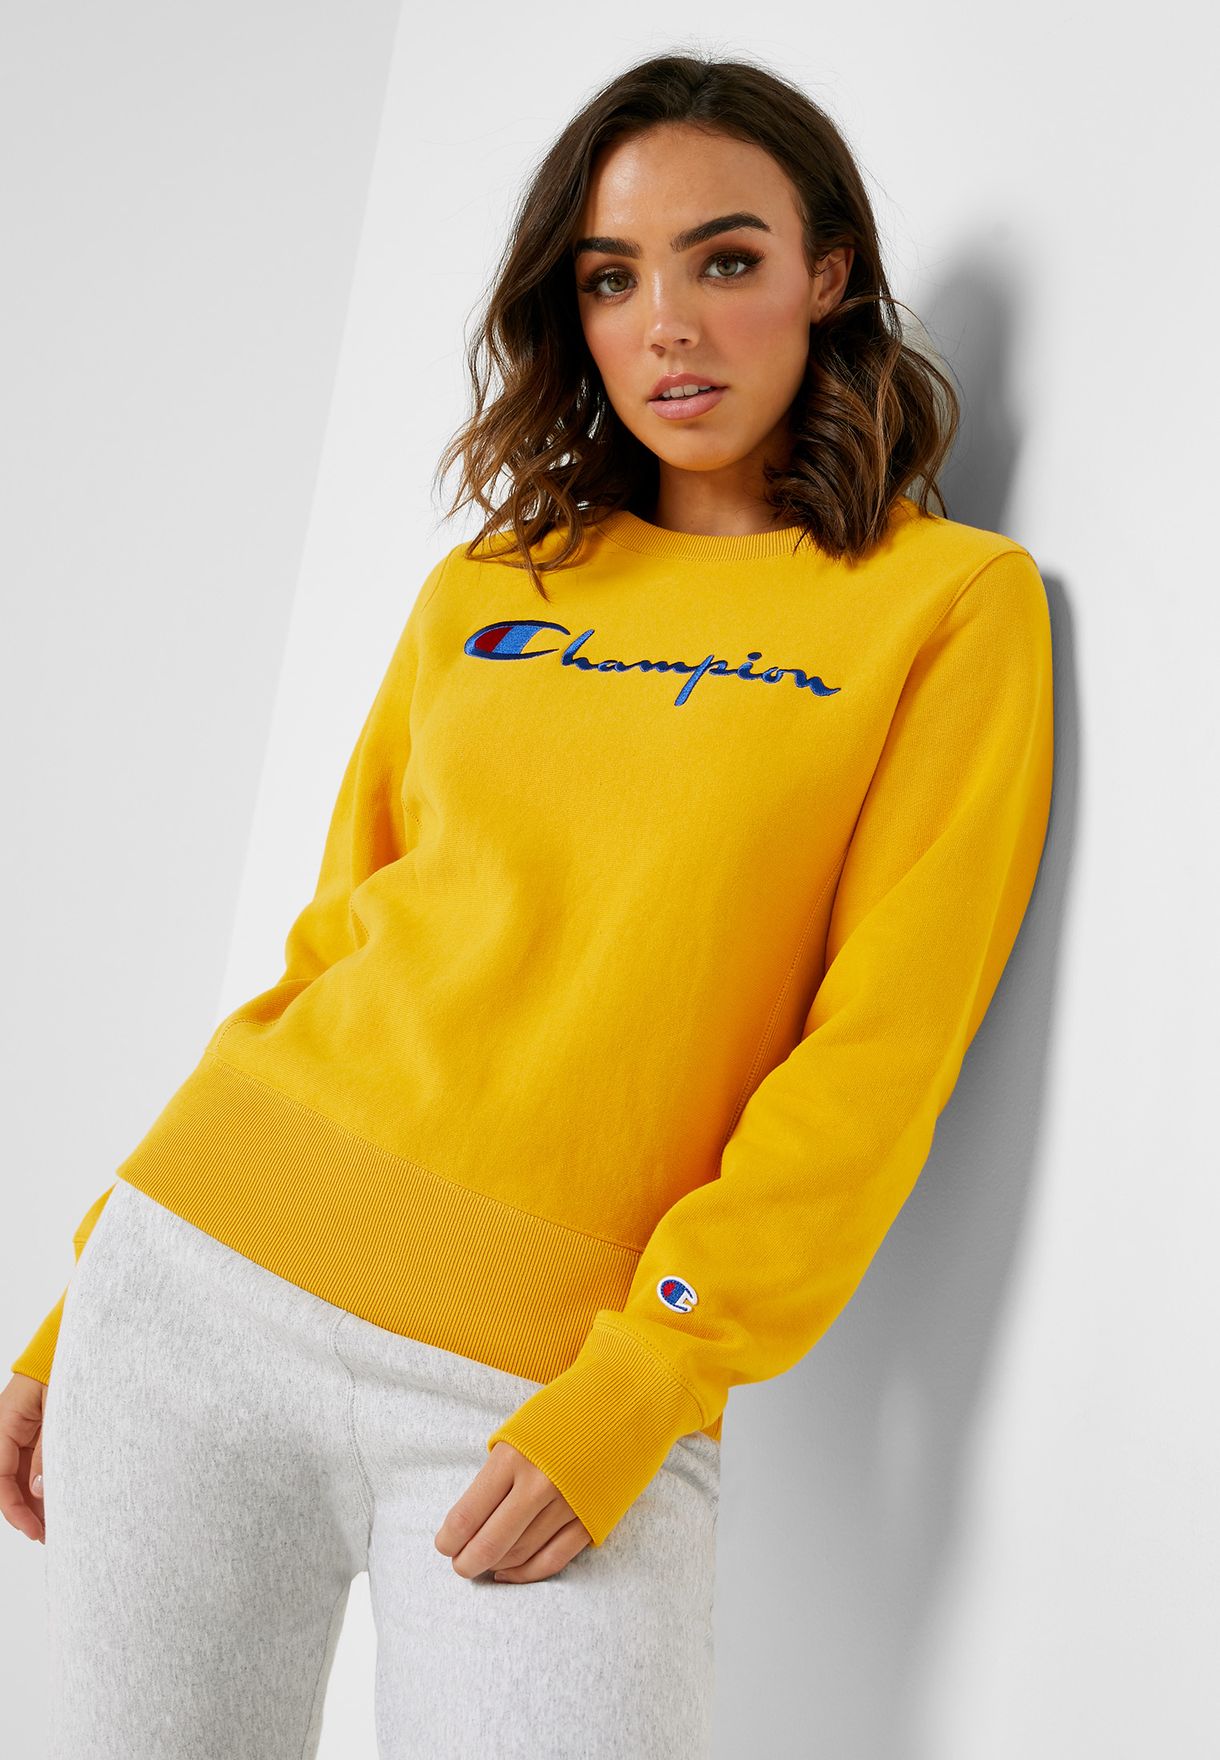 champion hoodies womens yellow